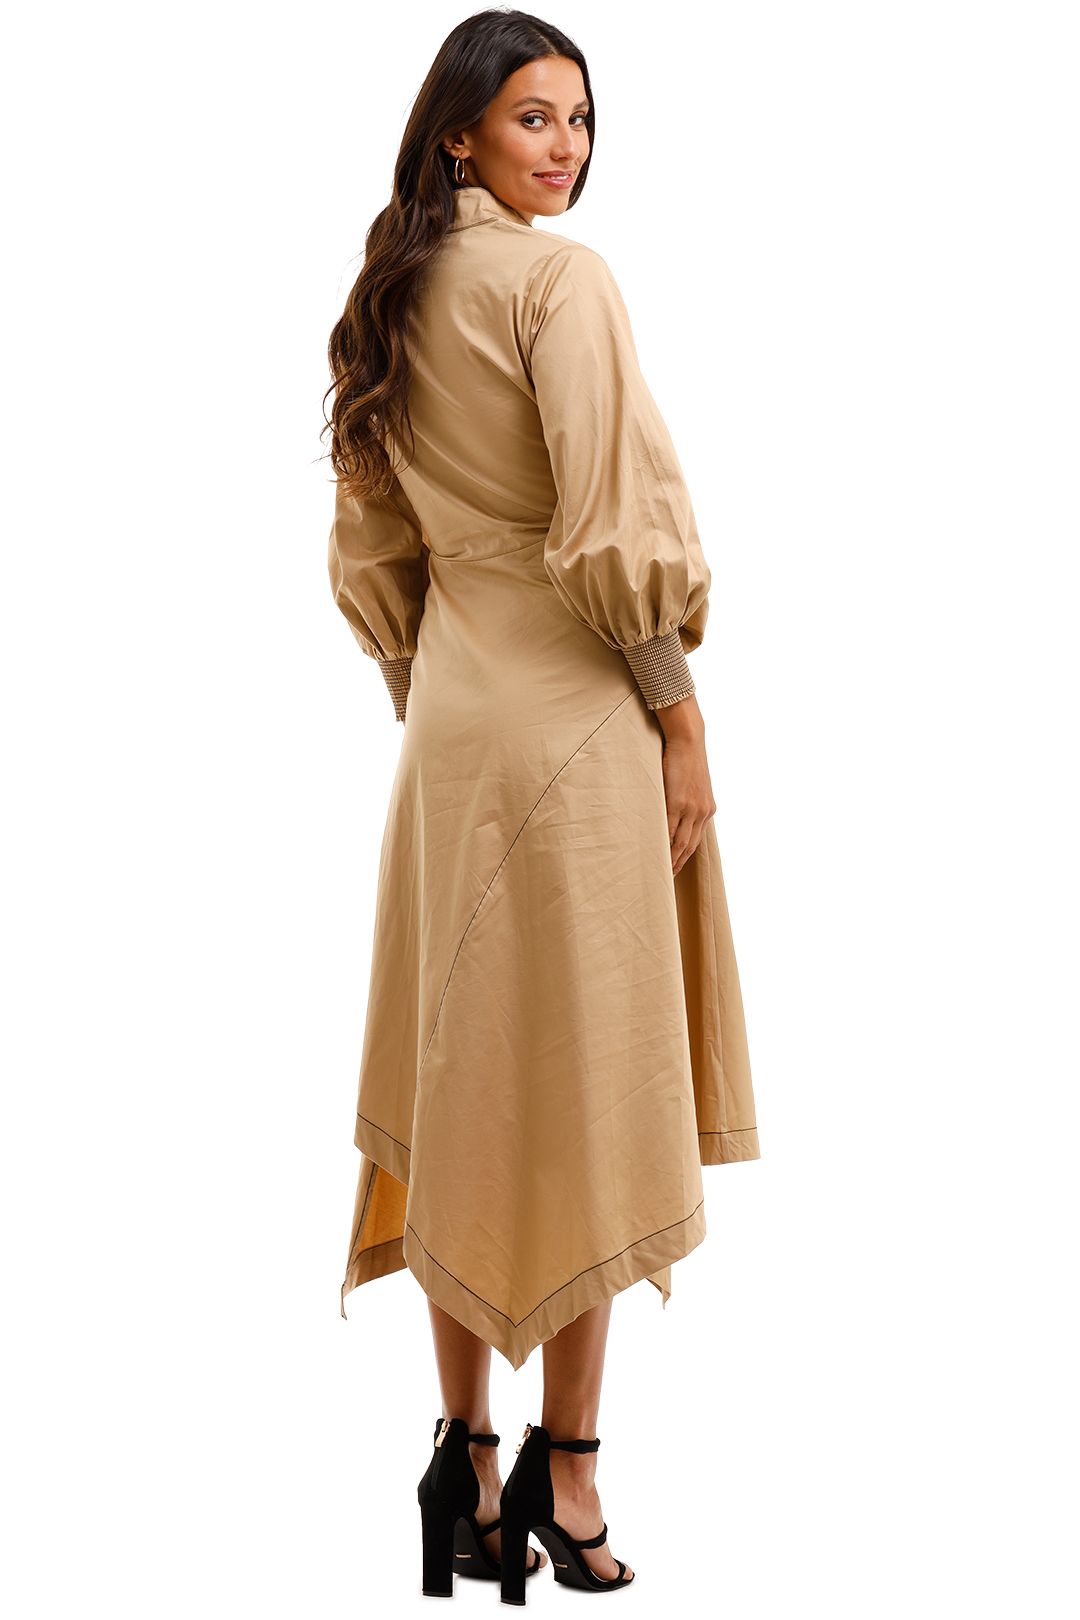 Husk Latin Dress Camel Brown Nude Dress